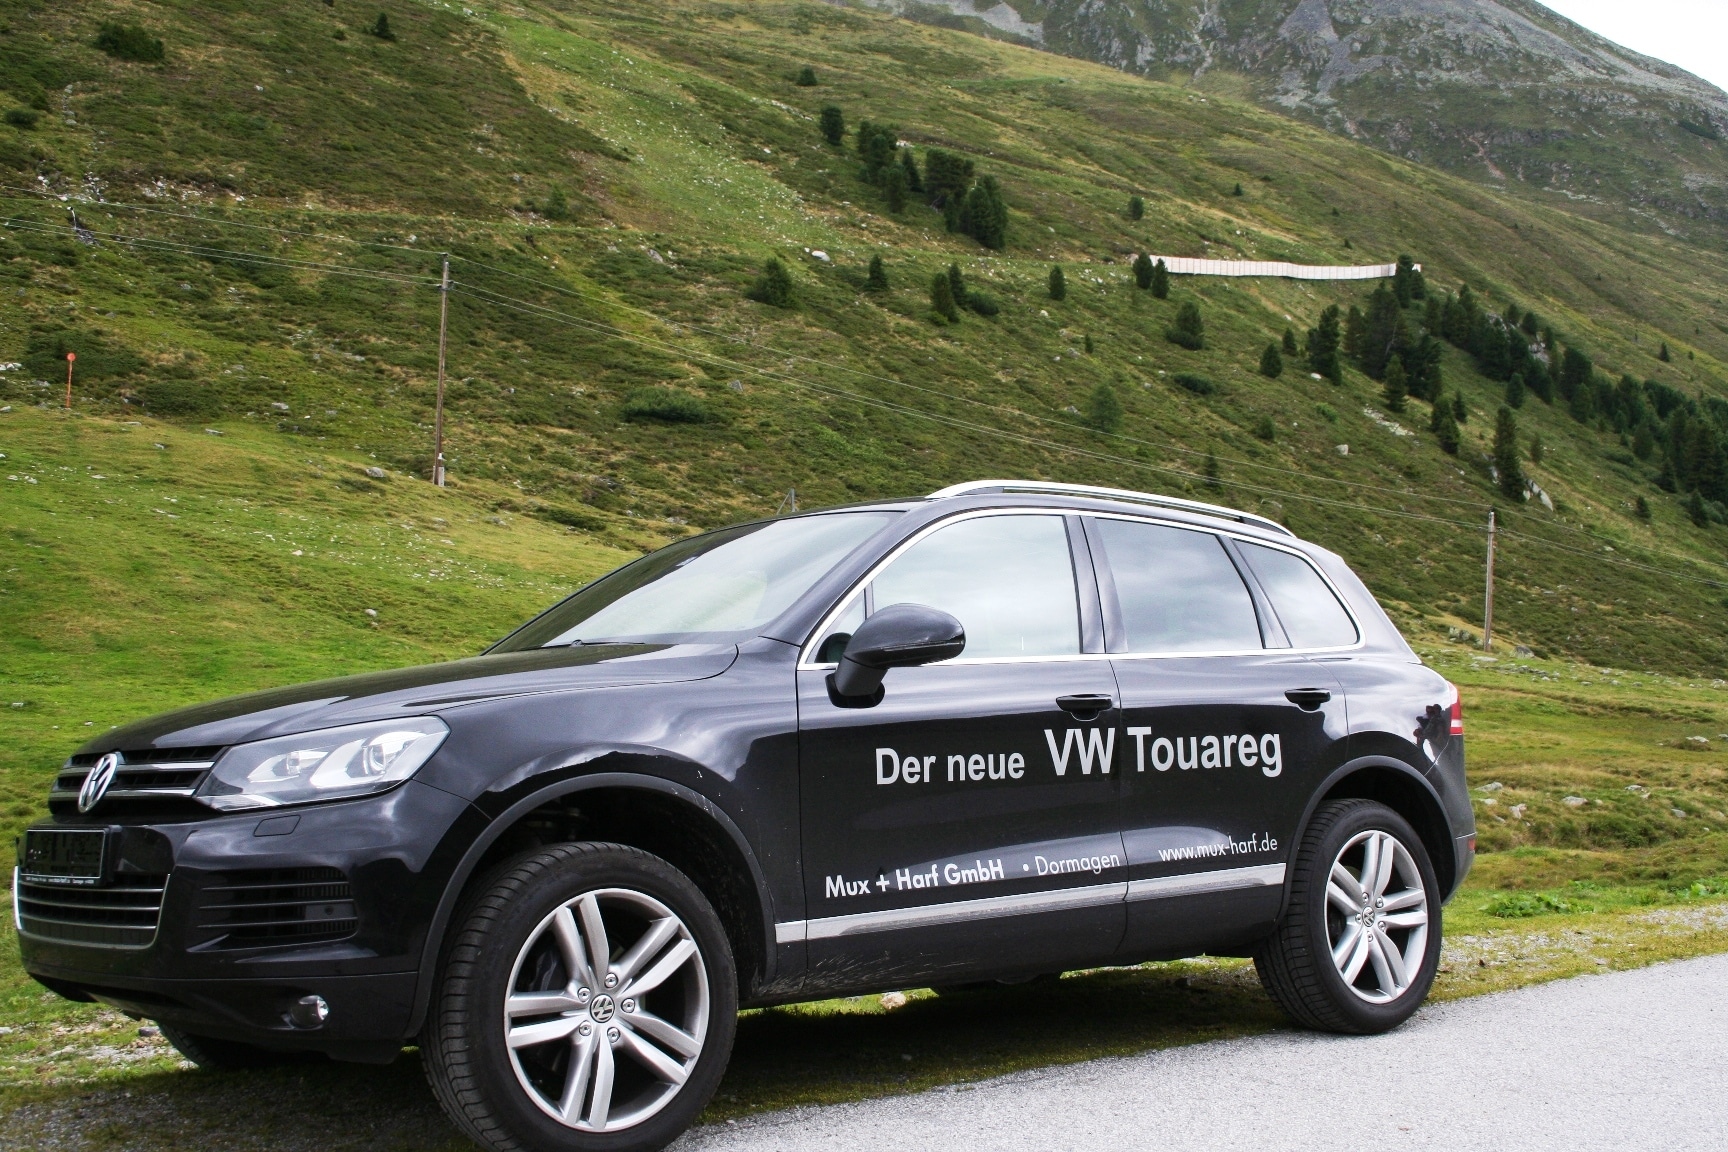 VW Touareg in den Tiroler Alpen 1